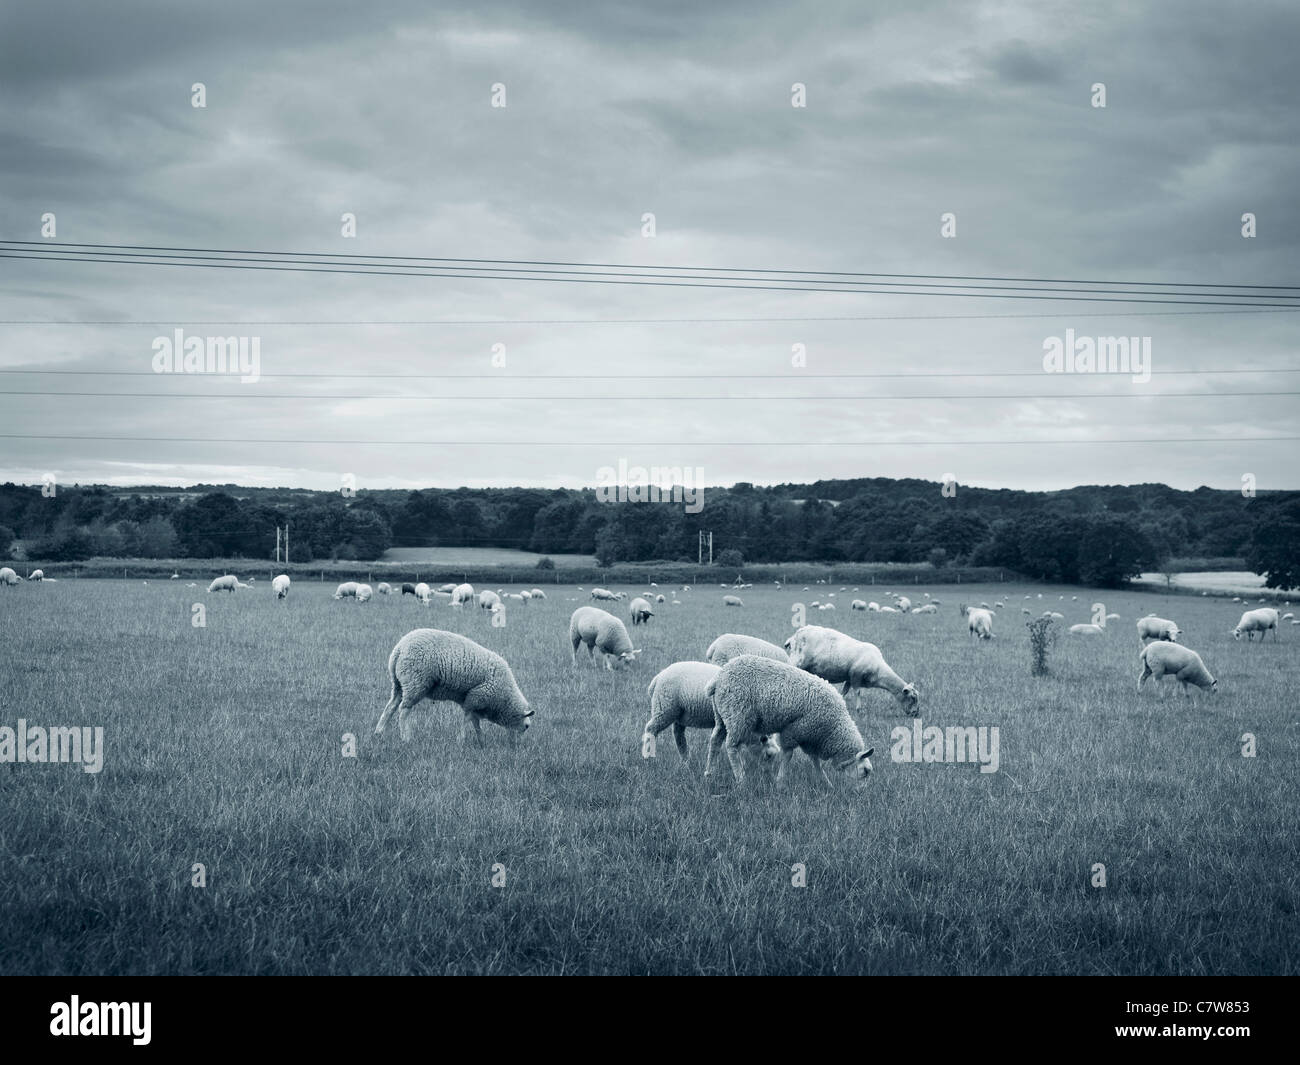 Schafbeweidung in Moulton Cheshire in einem Feld, schwarz / weiß blau getönten Landschaftsbild Stockfoto